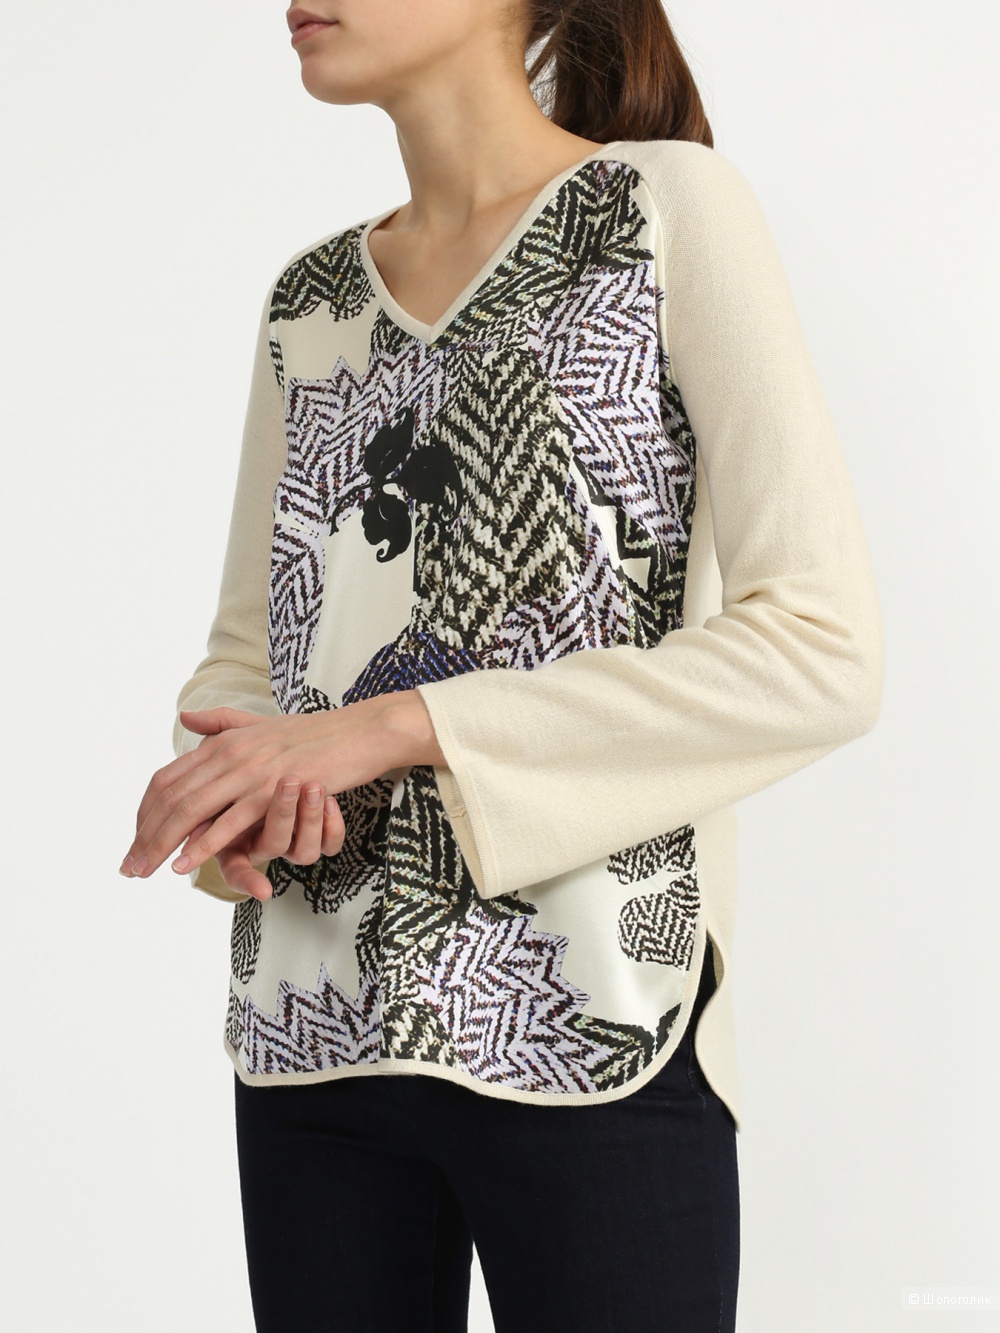 Пуловер Korpo Collezioni, 48-50 размер